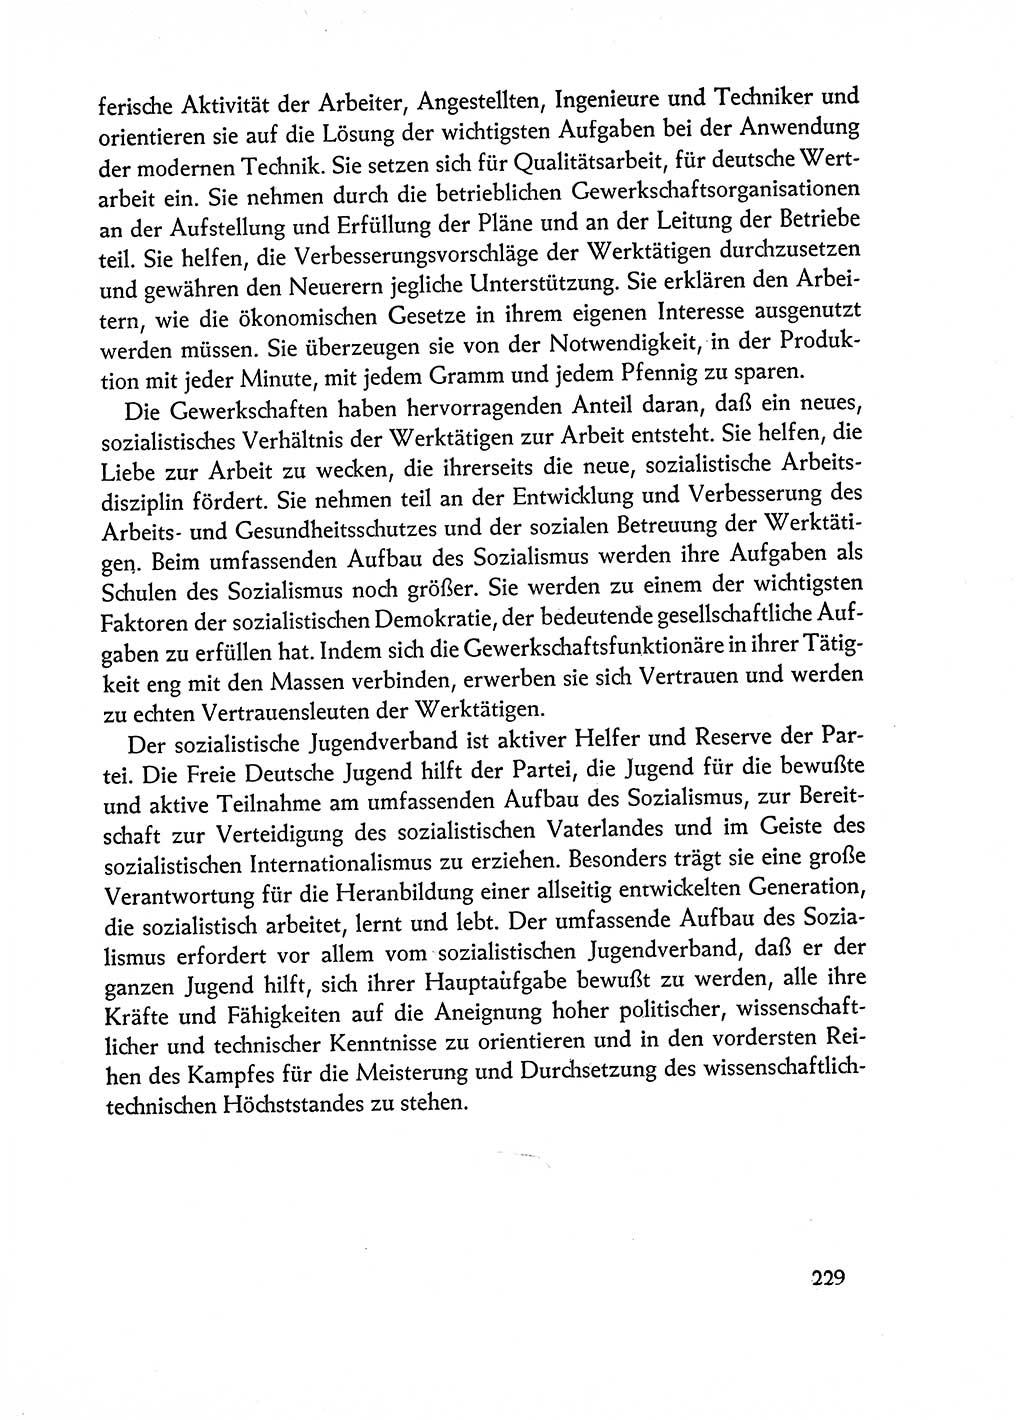 Dokumente der Sozialistischen Einheitspartei Deutschlands (SED) [Deutsche Demokratische Republik (DDR)] 1962-1963, Seite 229 (Dok. SED DDR 1962-1963, S. 229)